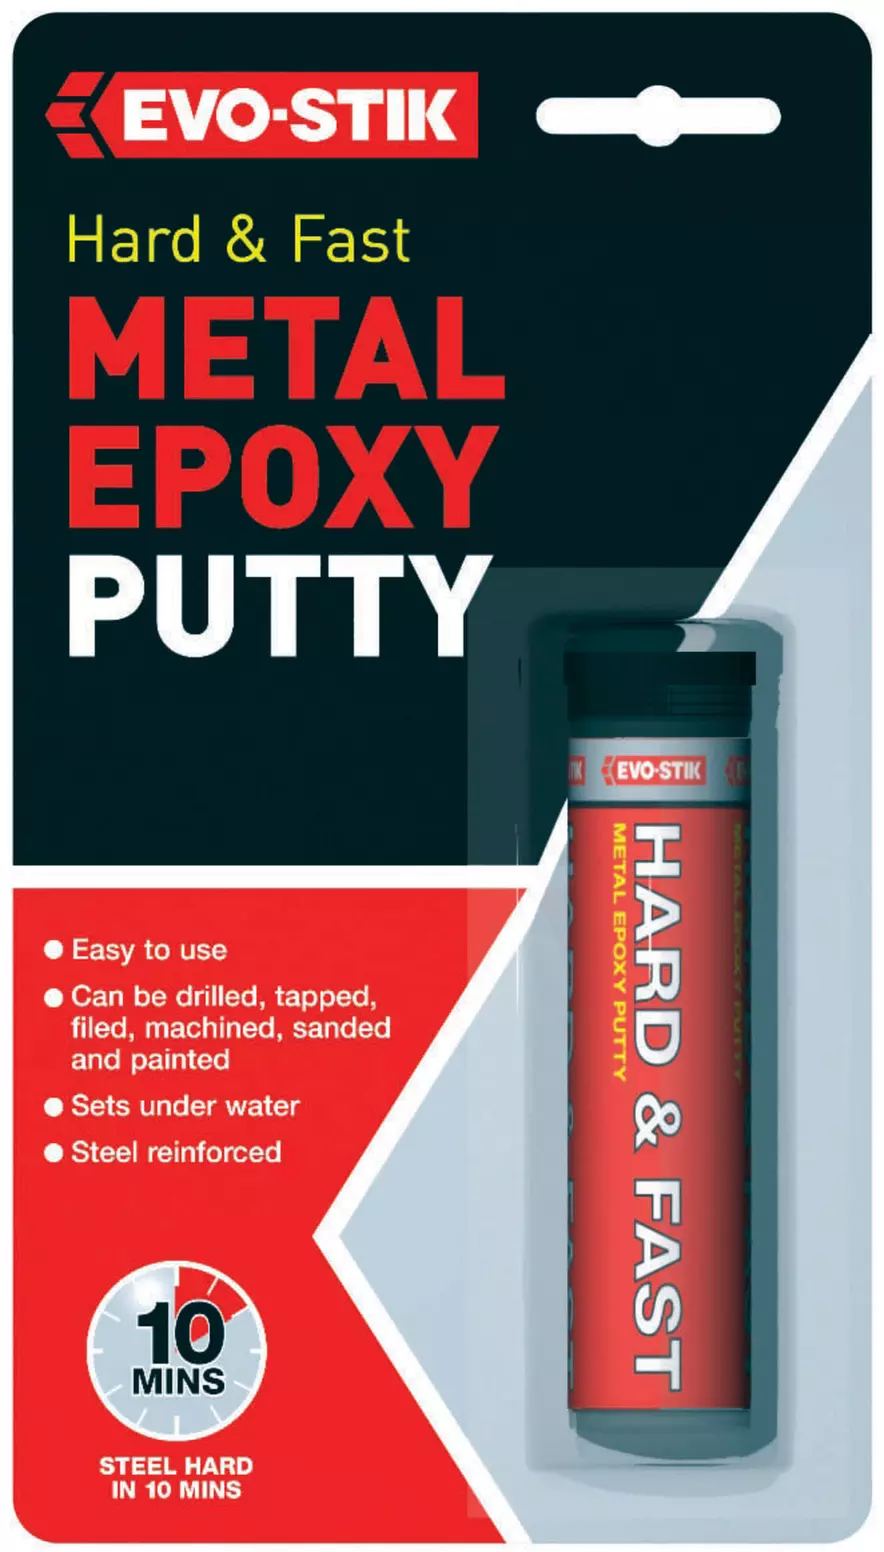 VIKEYTIM Epoxy Putty, 120g Hard and Fast Metal Epoxy Putty, Metal